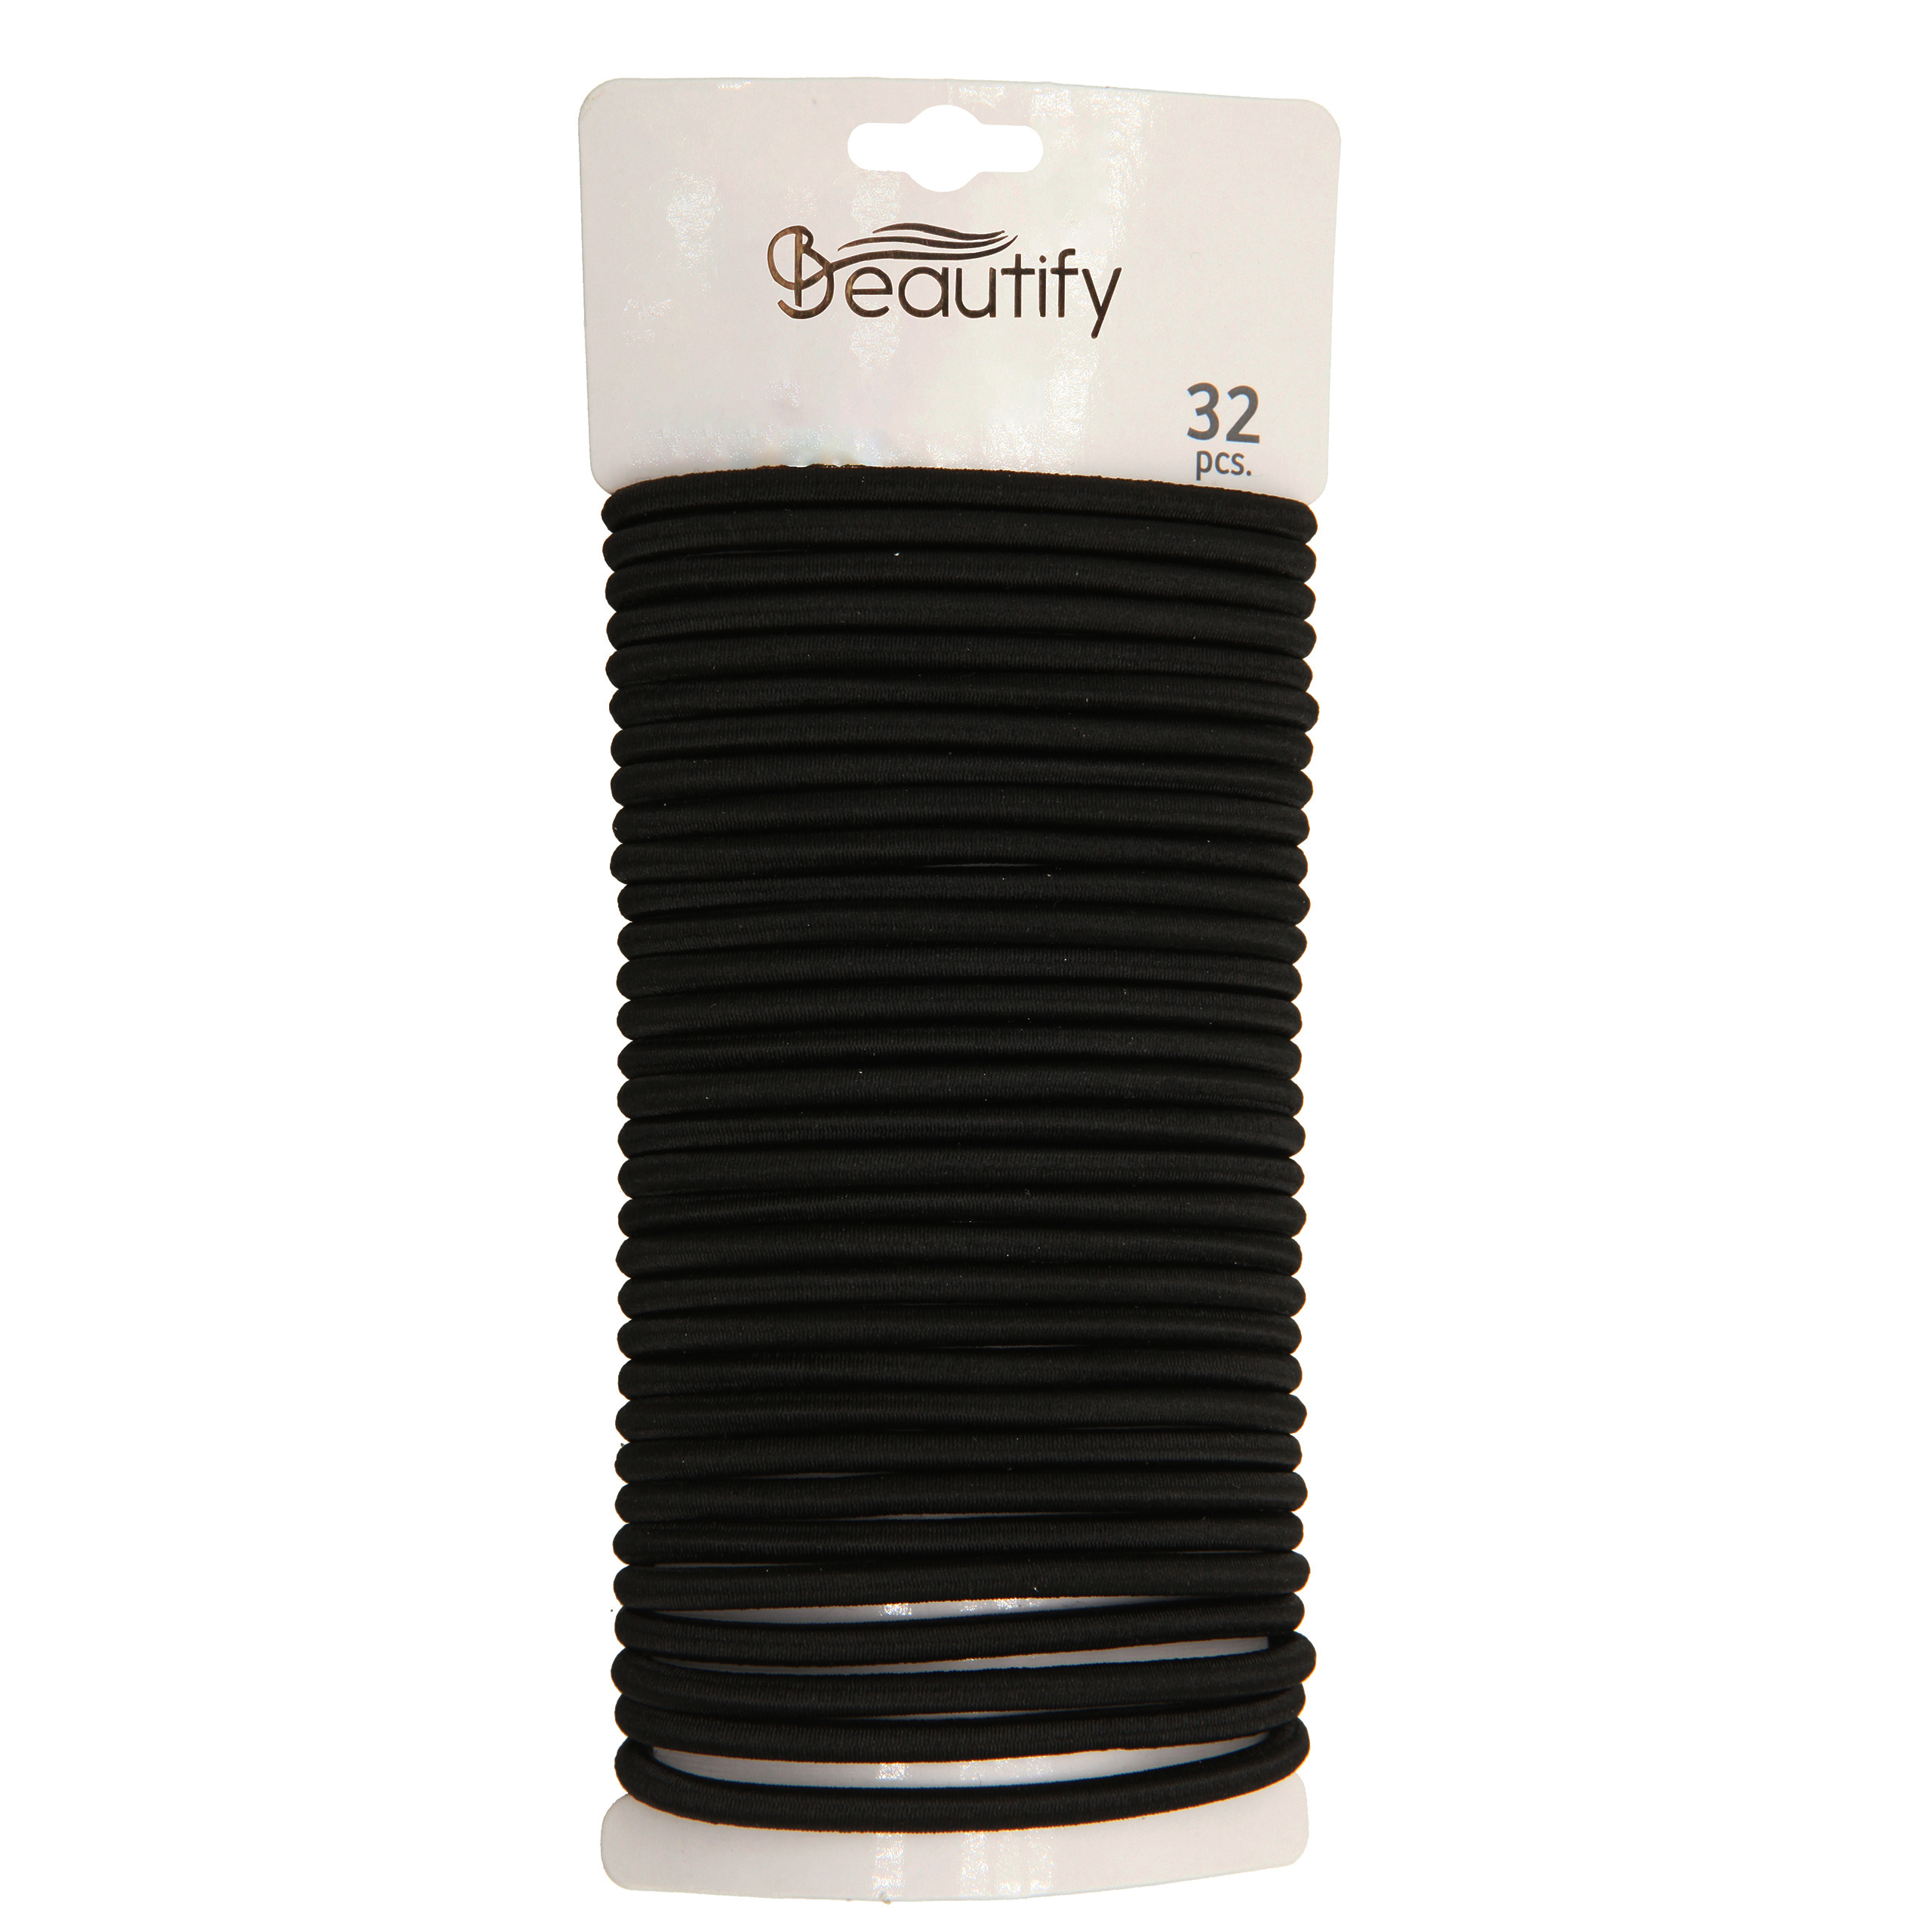 32pcs black solid color elastics